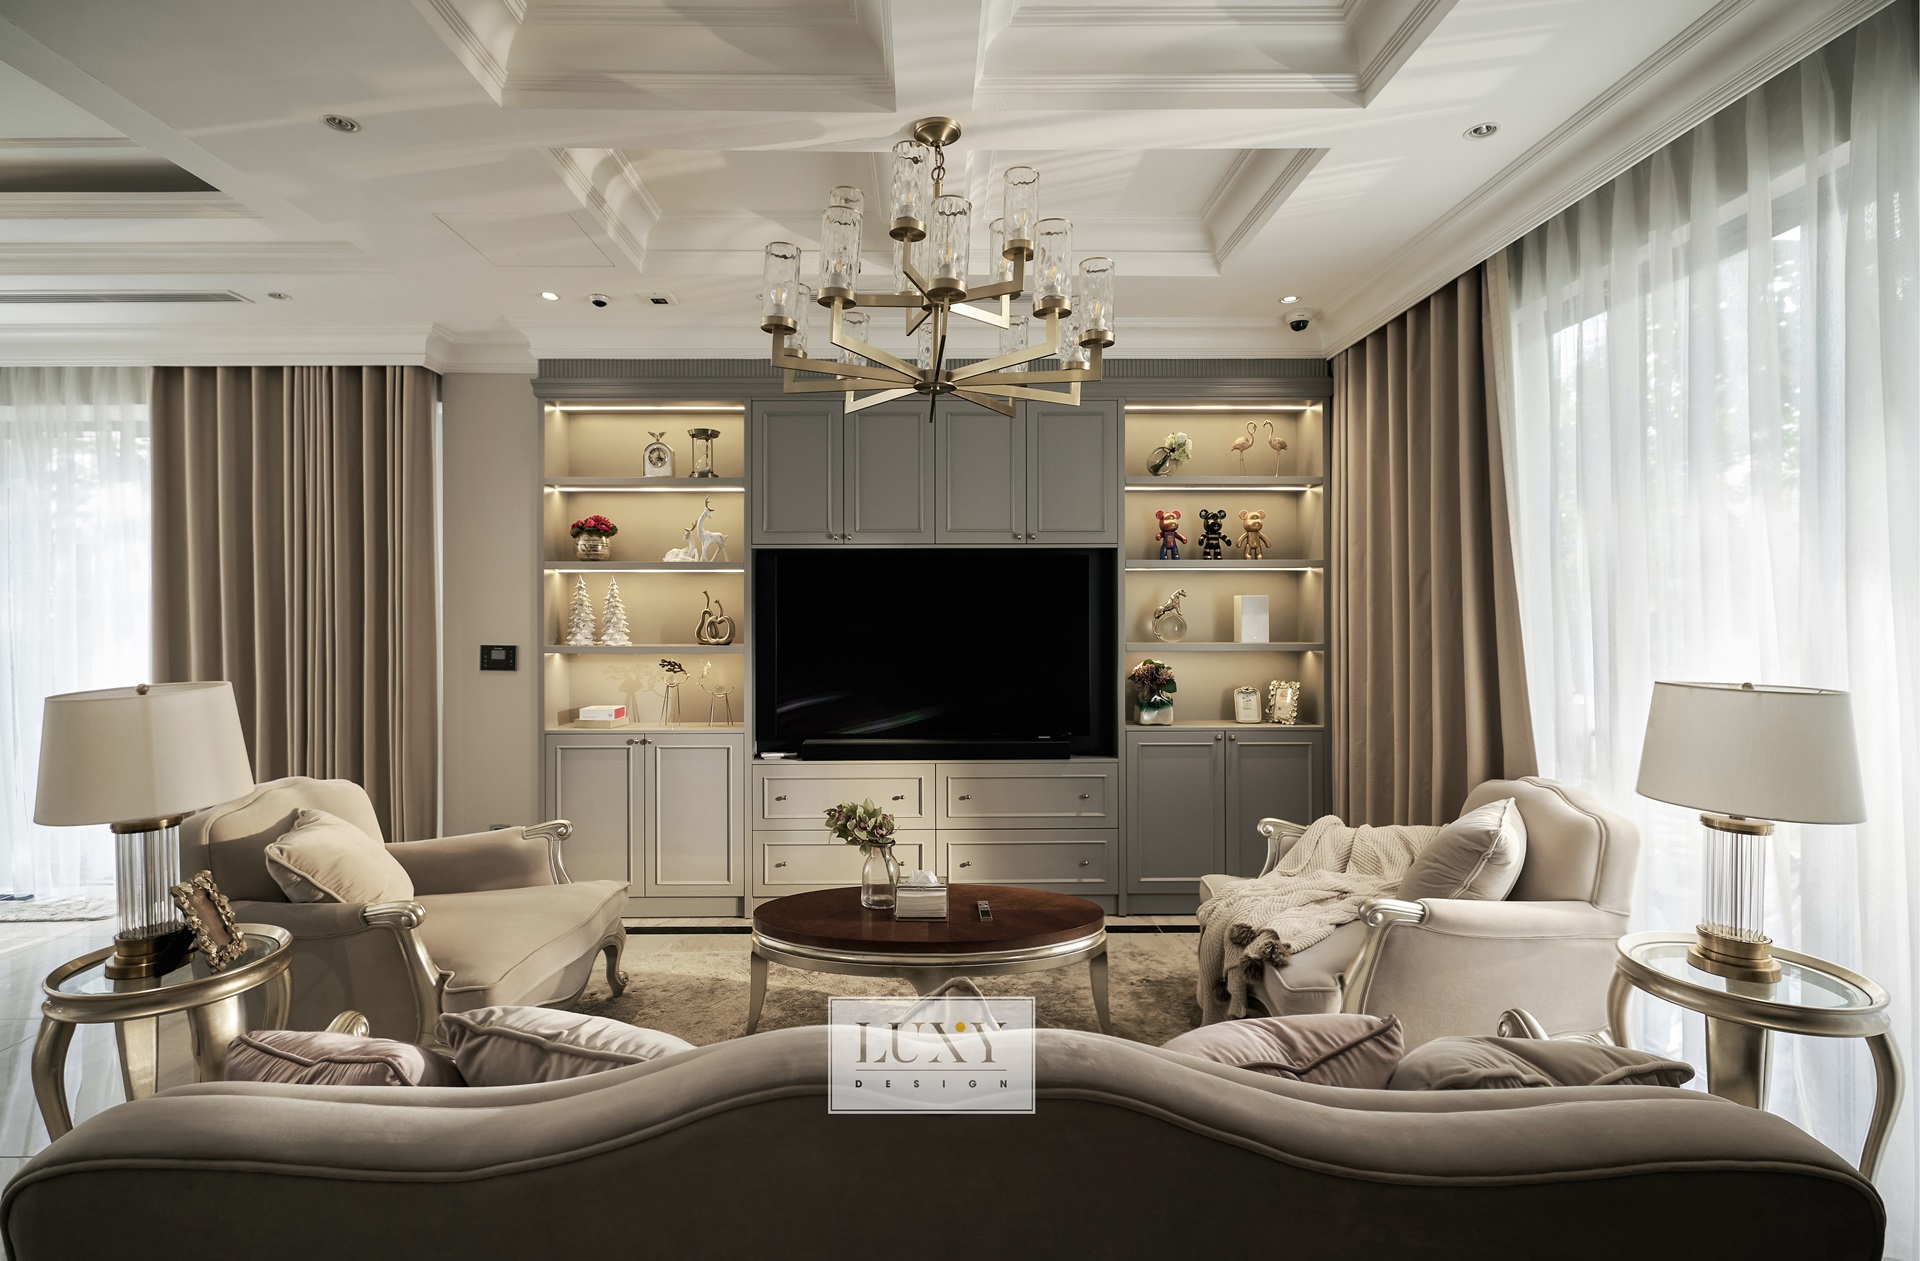 Phòng khách nổi bật với cách kết cấu đối xứng các vật dụng cùng màu sắc nhẹ nhàng